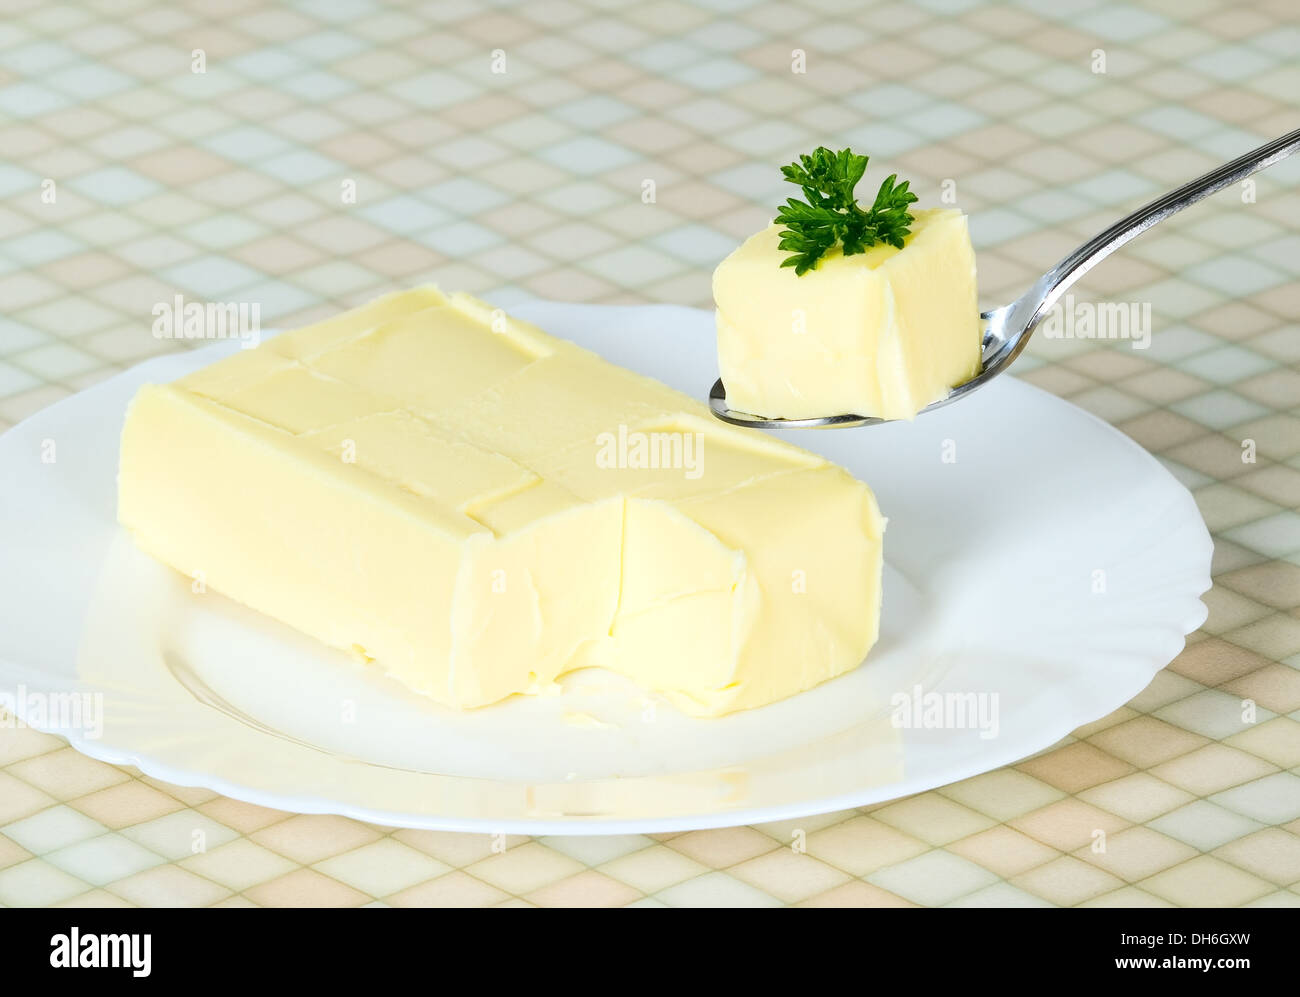 Le beurre de persil jaune est en cours d'attente avec une cuillère, un concept alimentaire Banque D'Images